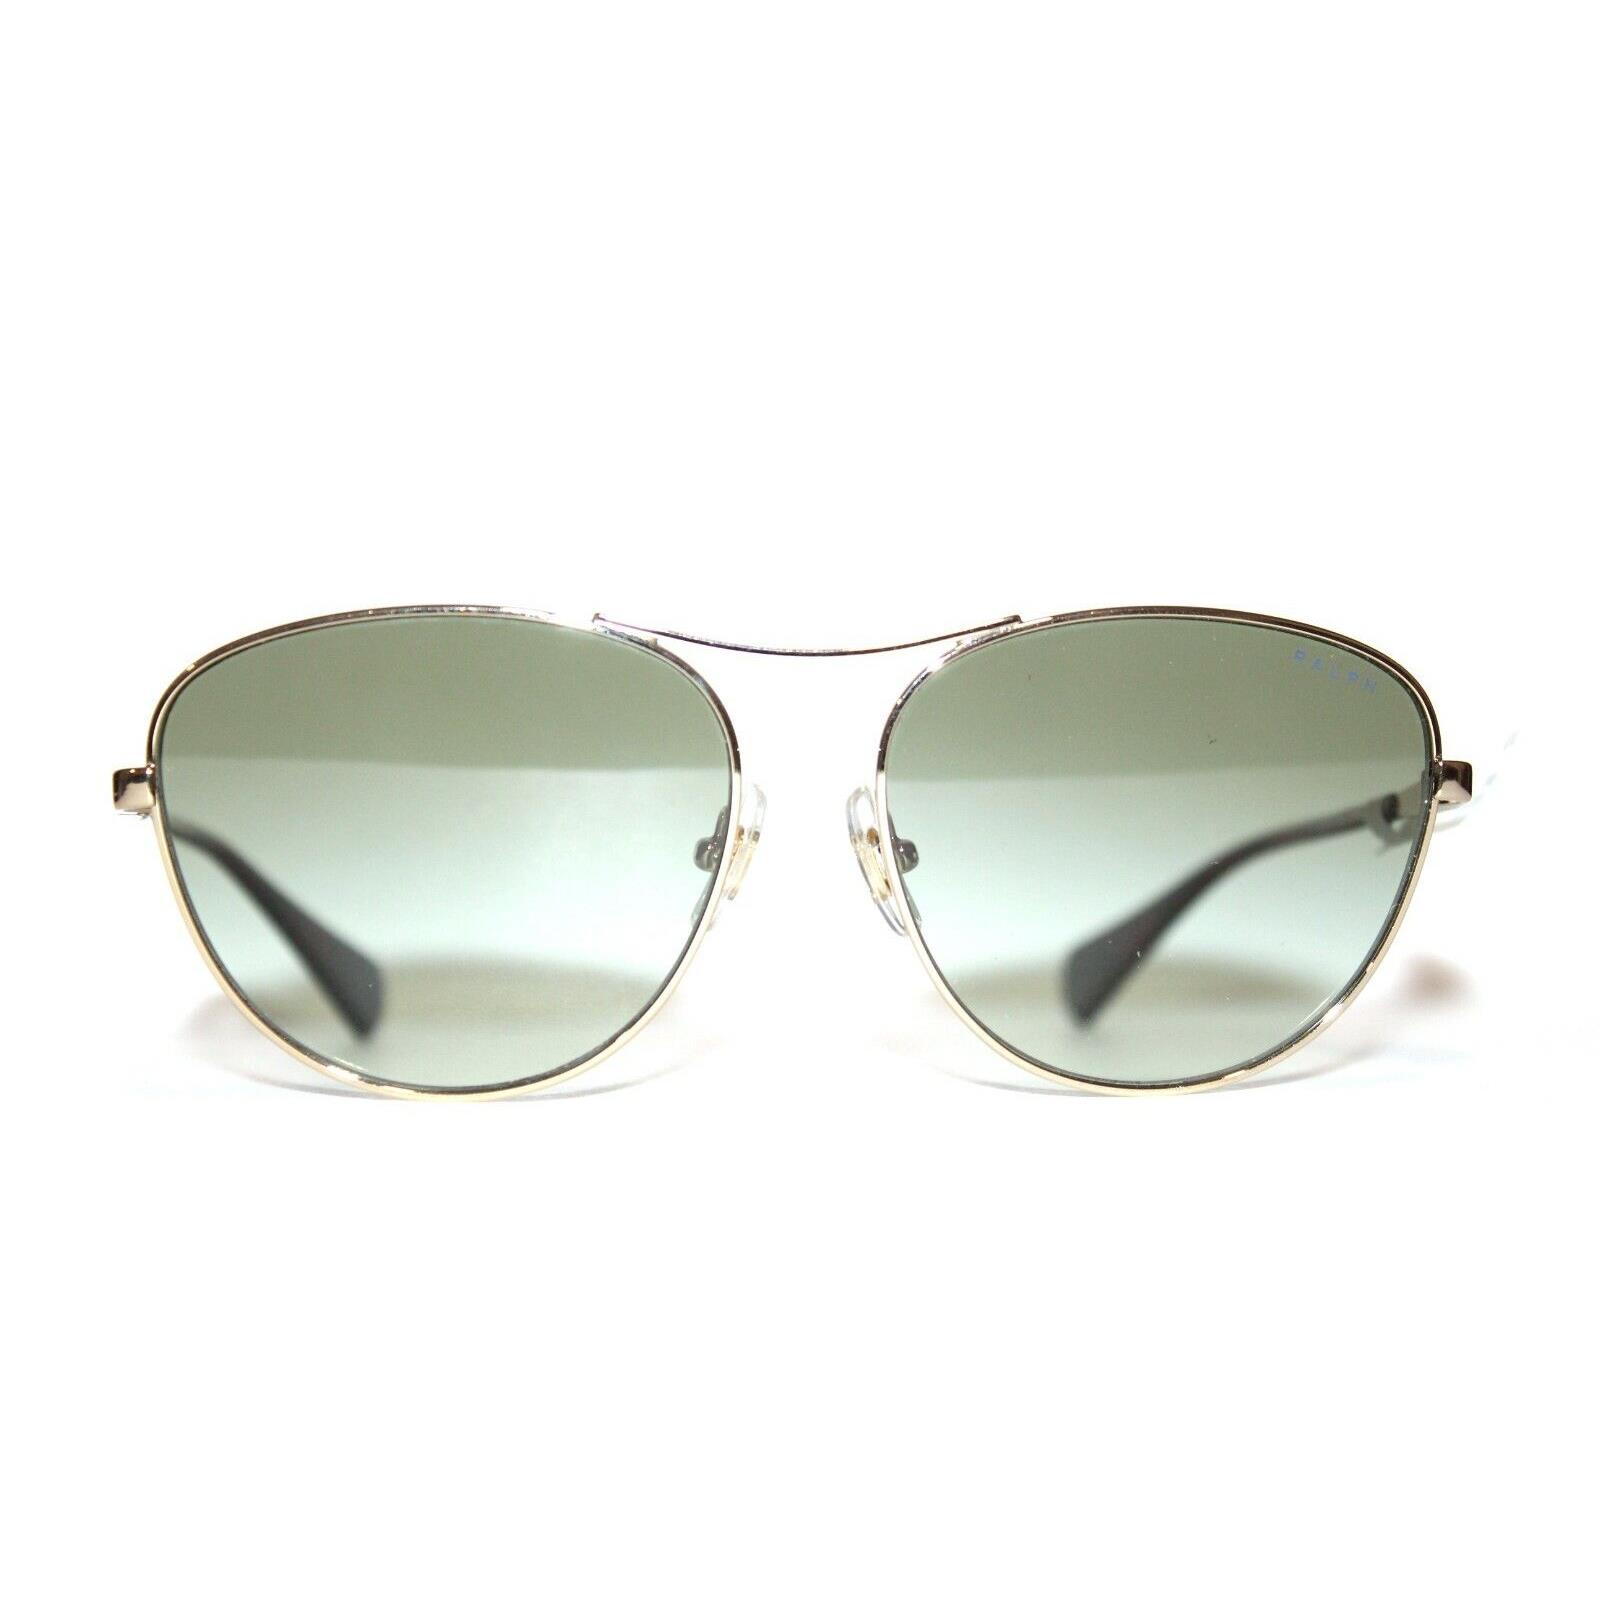 Ralph Lauren RA4126 9116/8E Gold Green Sunglasses Women 57-16-140 - Gold Frame, Green Lens